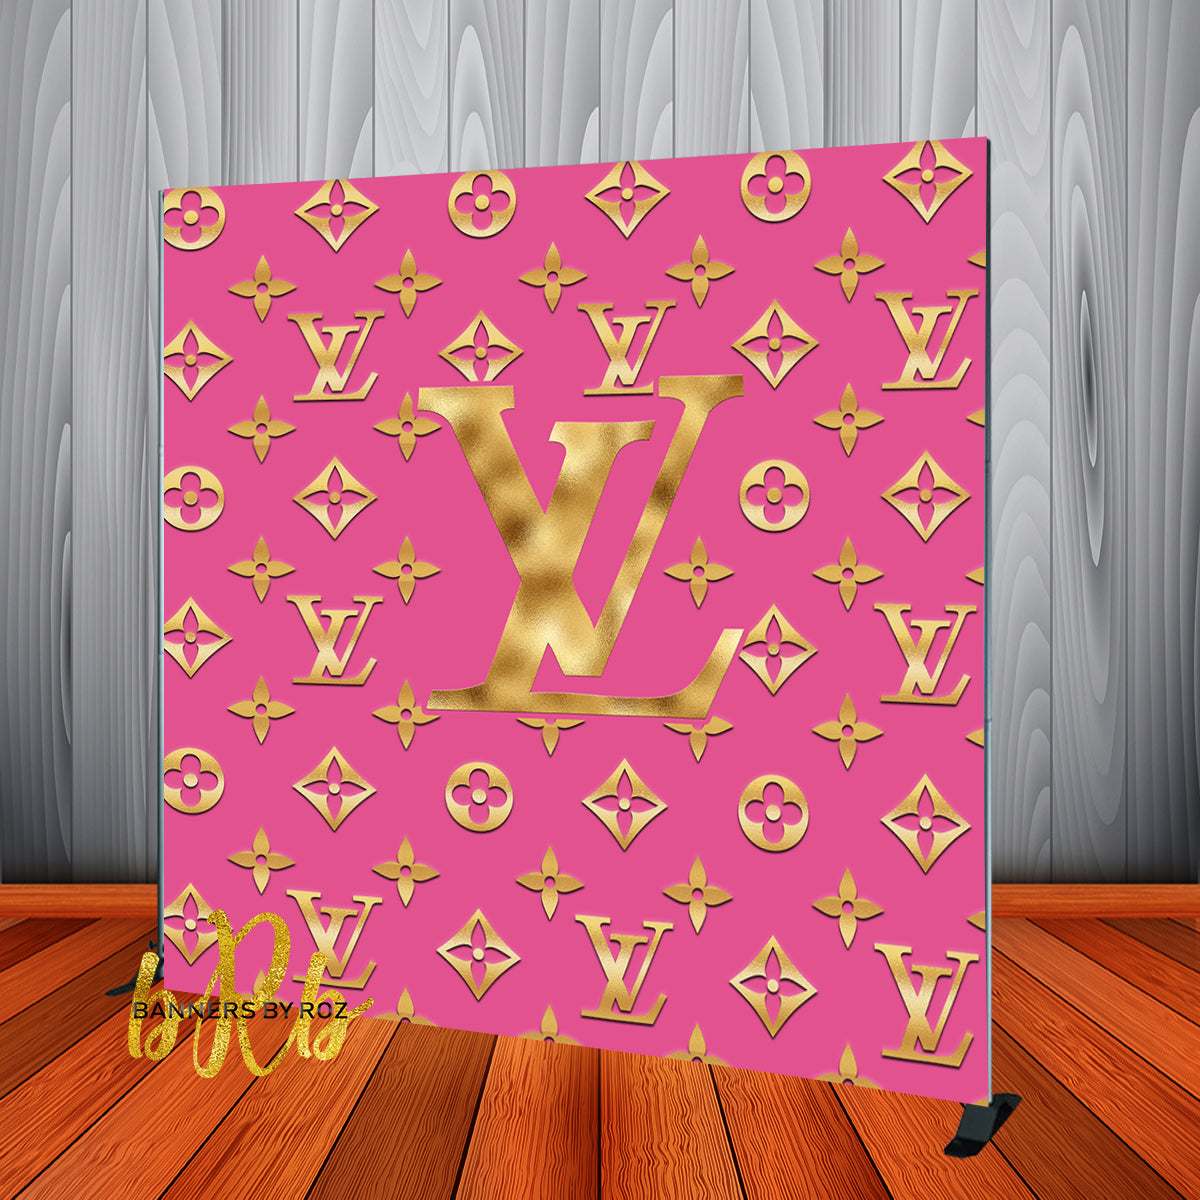 Link in bio Louis Vuitton #backdrops #LV #bannersbyroz #louisvuitton #